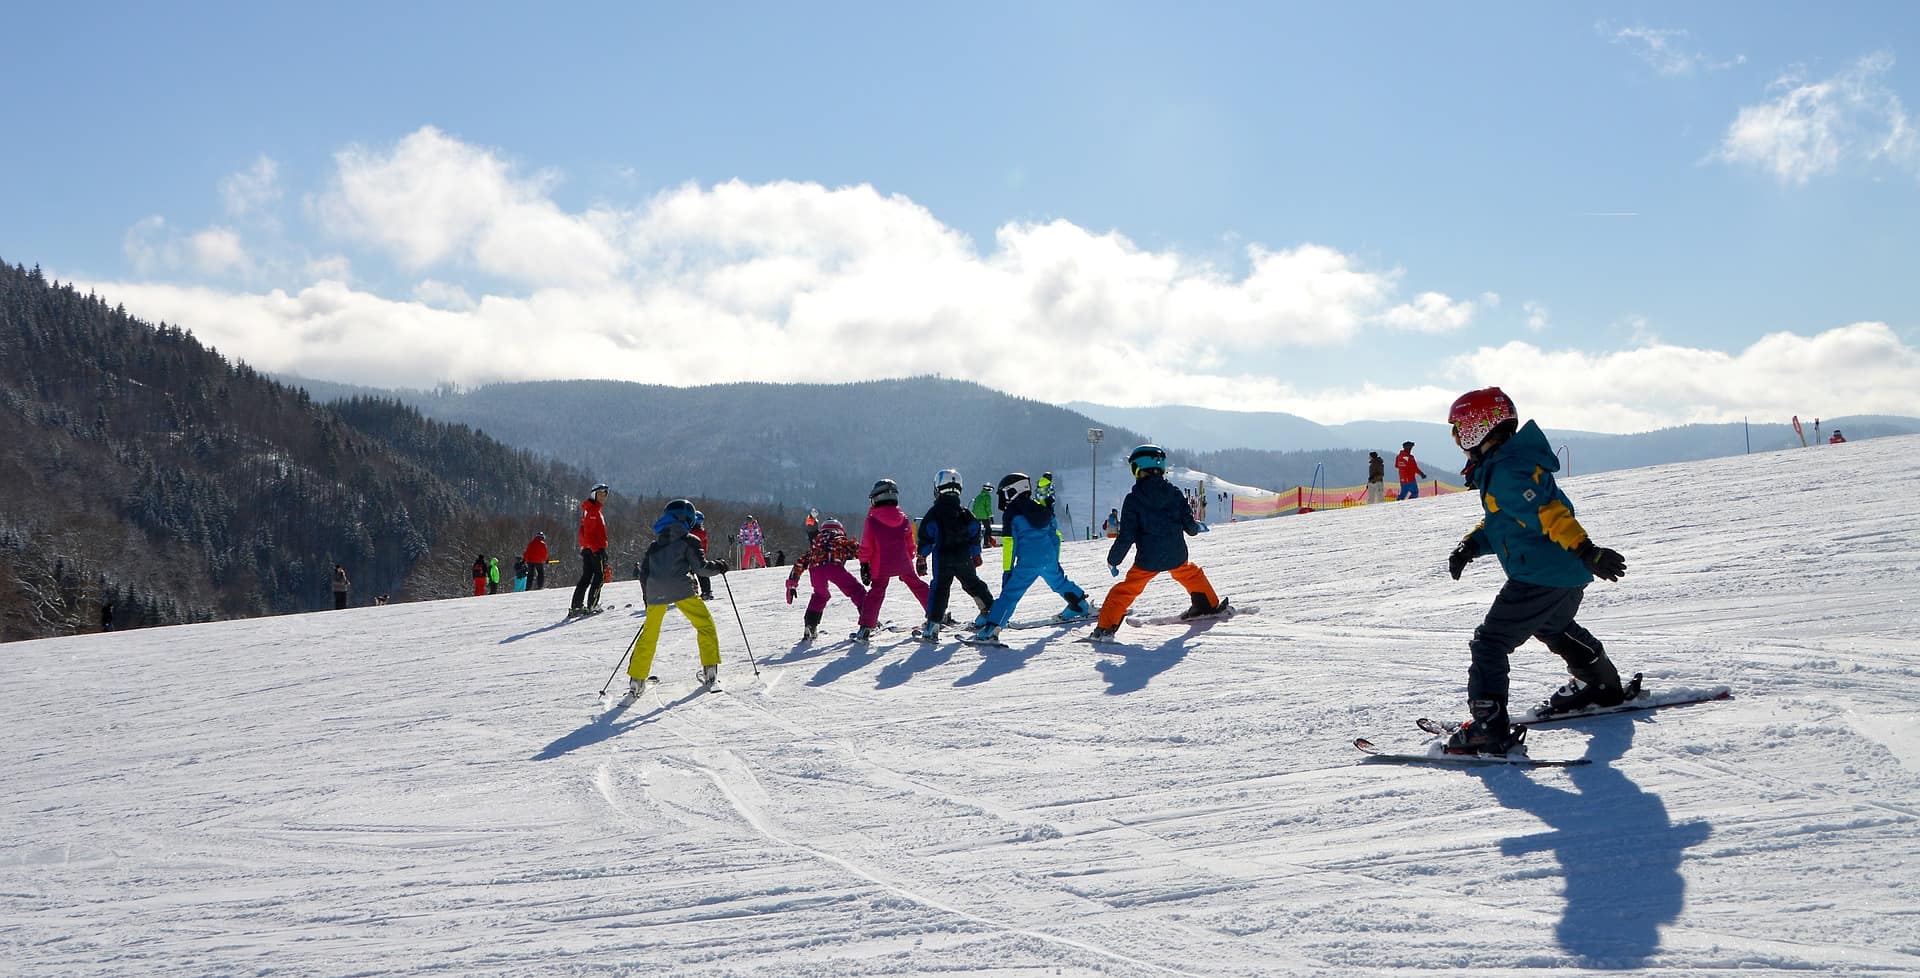 Vacances au ski en famille : les meilleures destinations